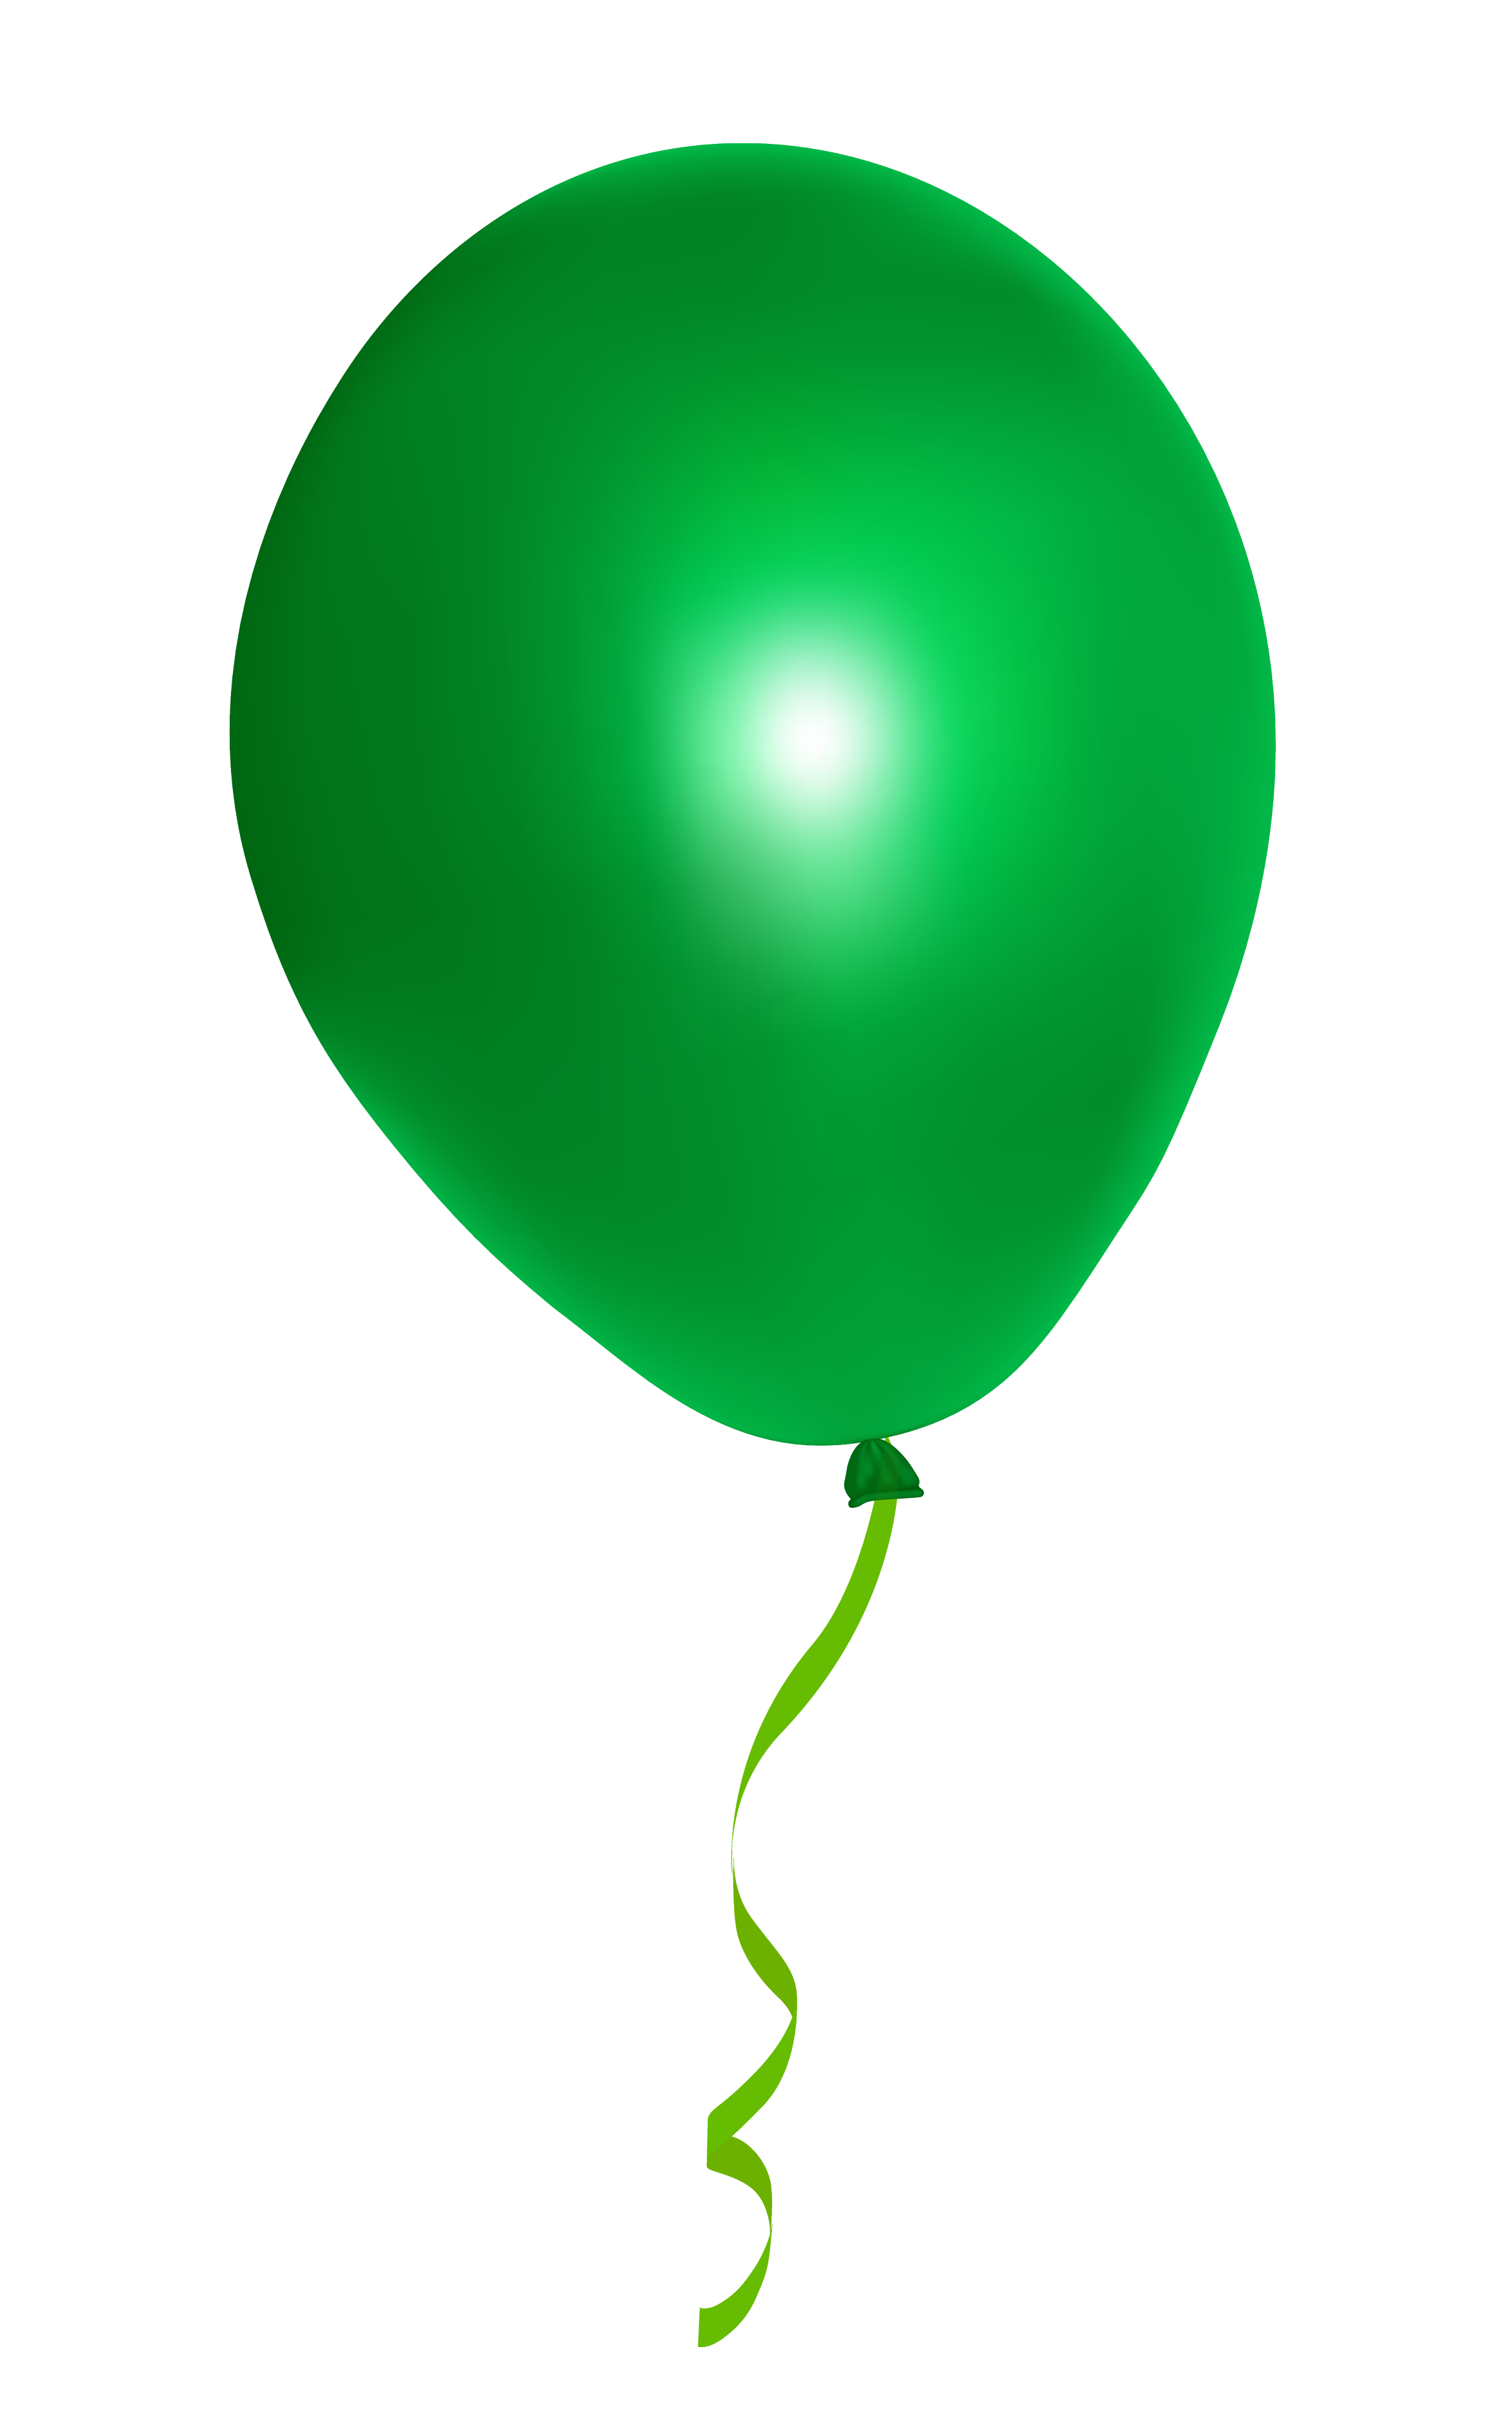 Глянцевый зеленый шар PNG Clipart